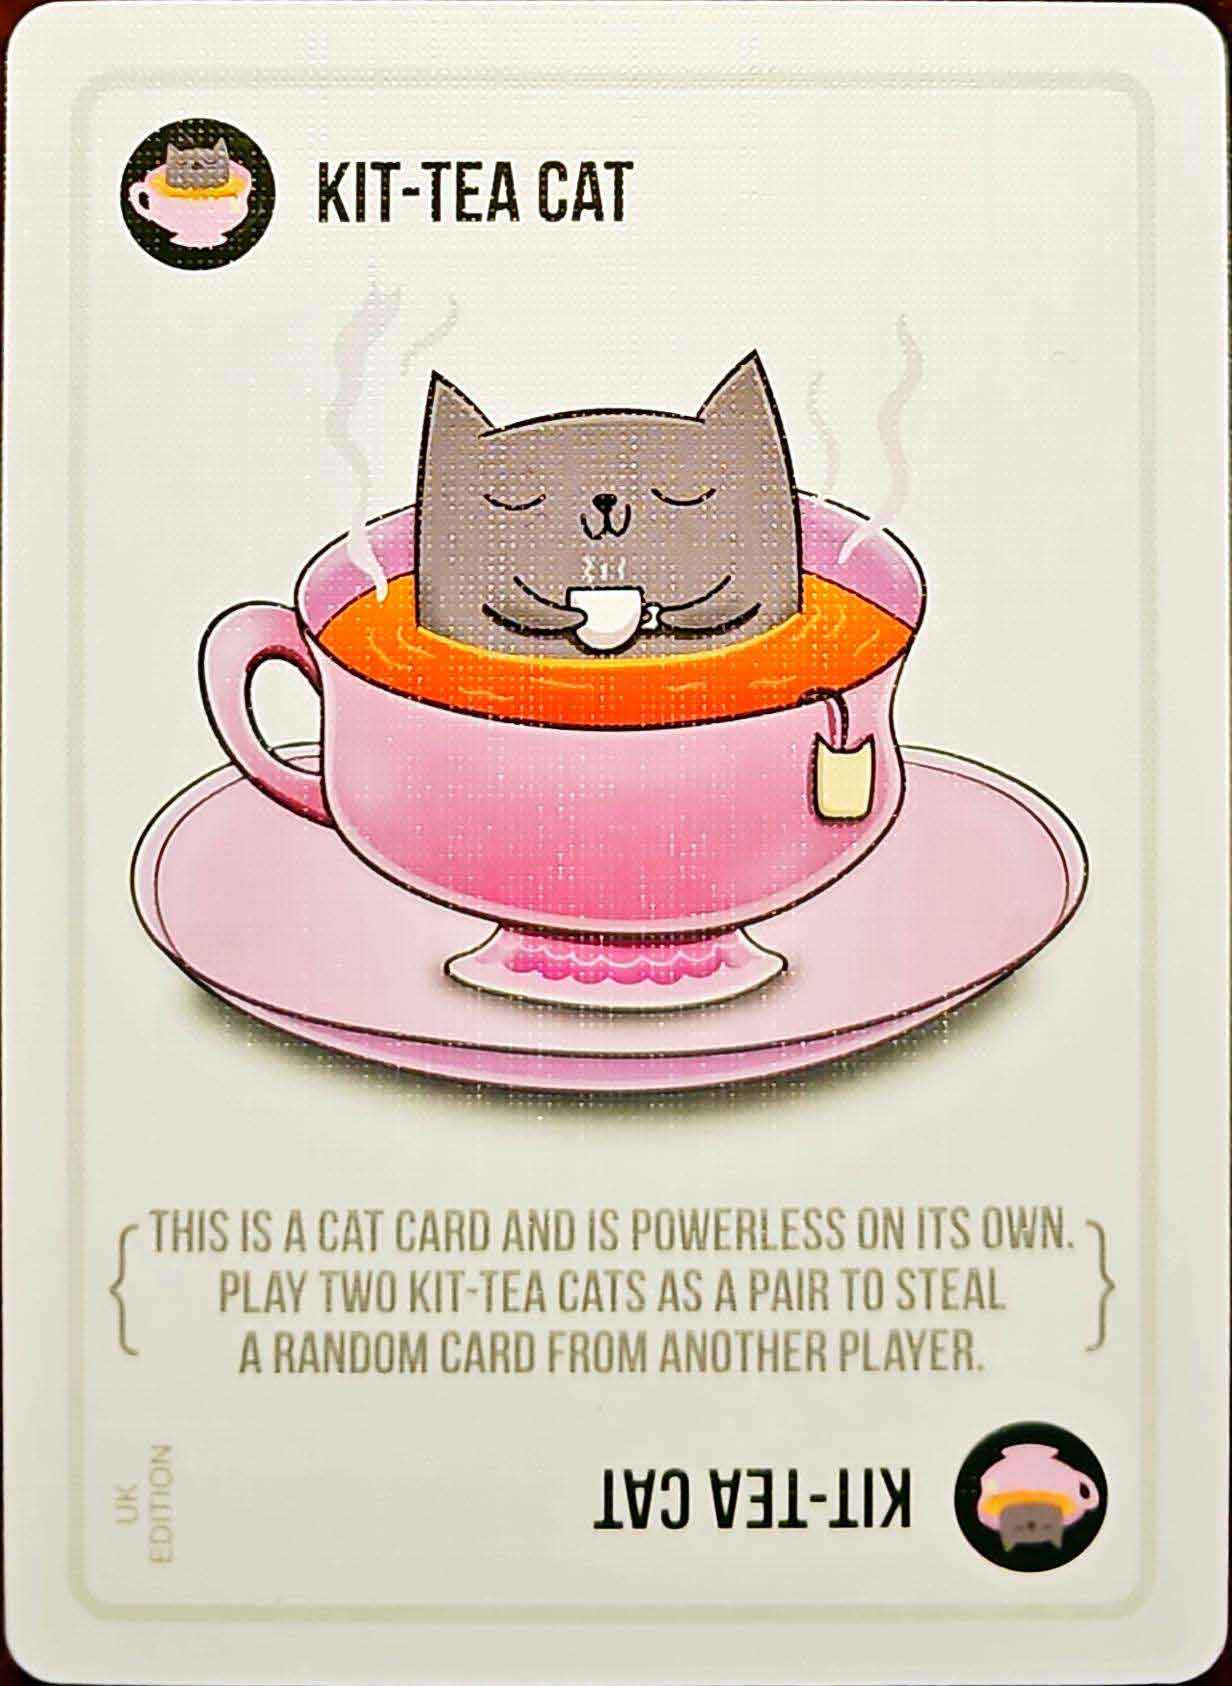 Cat Card - Variant 12